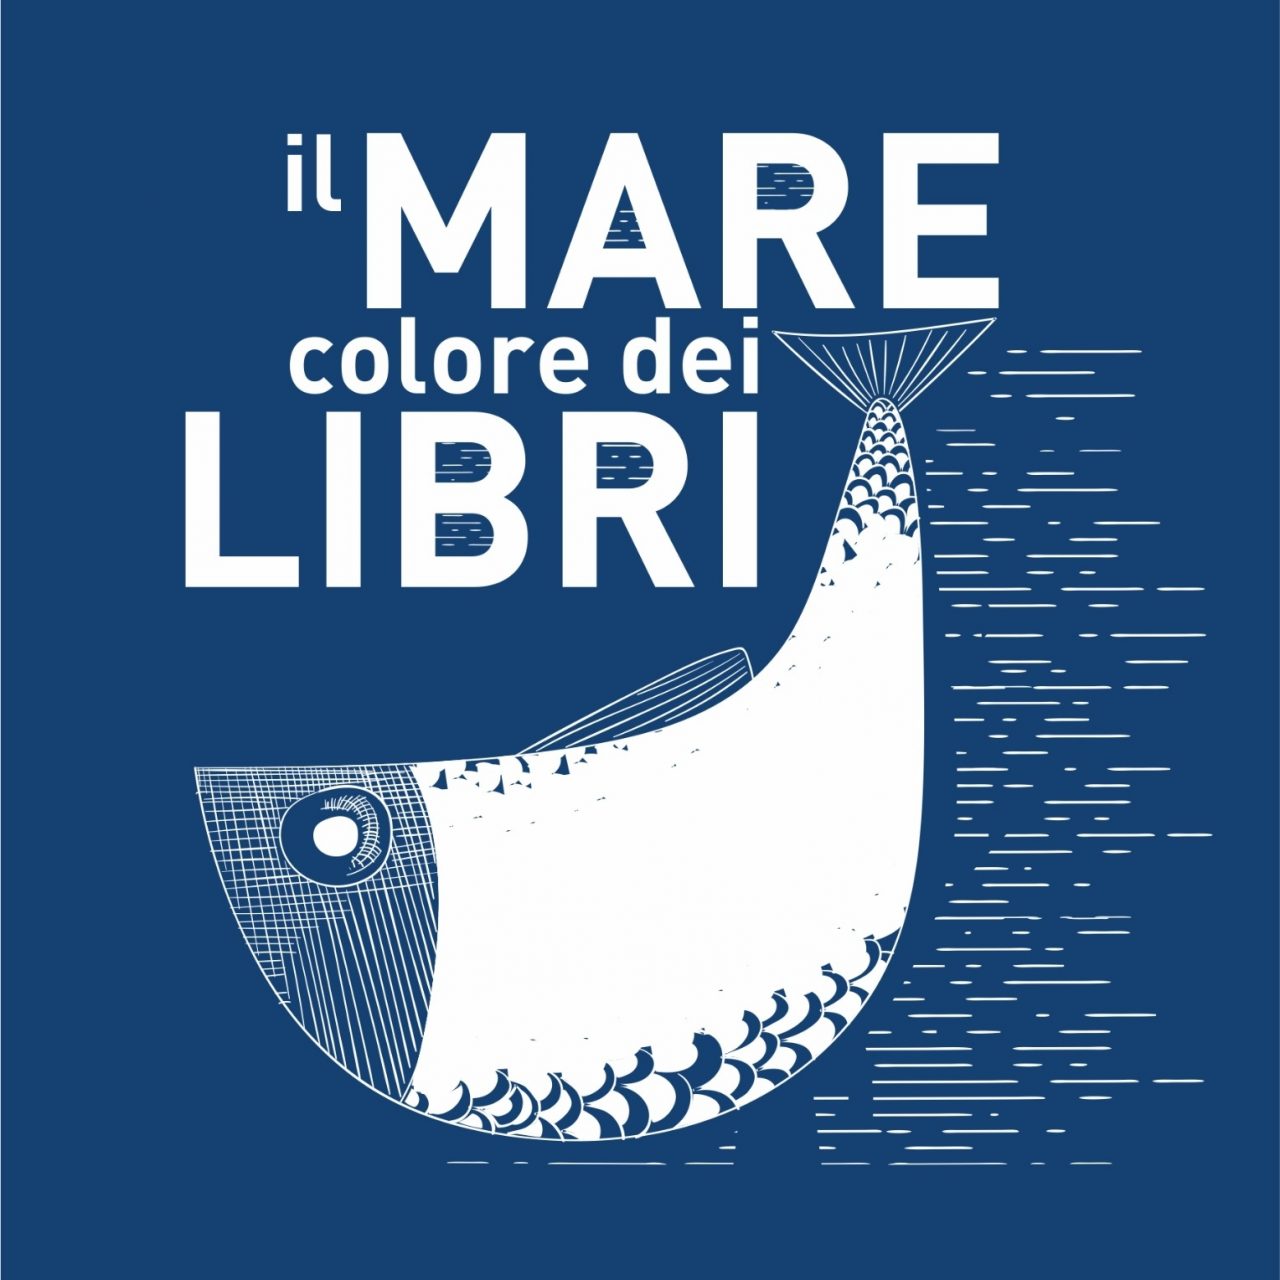 Il Marecolore dei LIBRI, logo